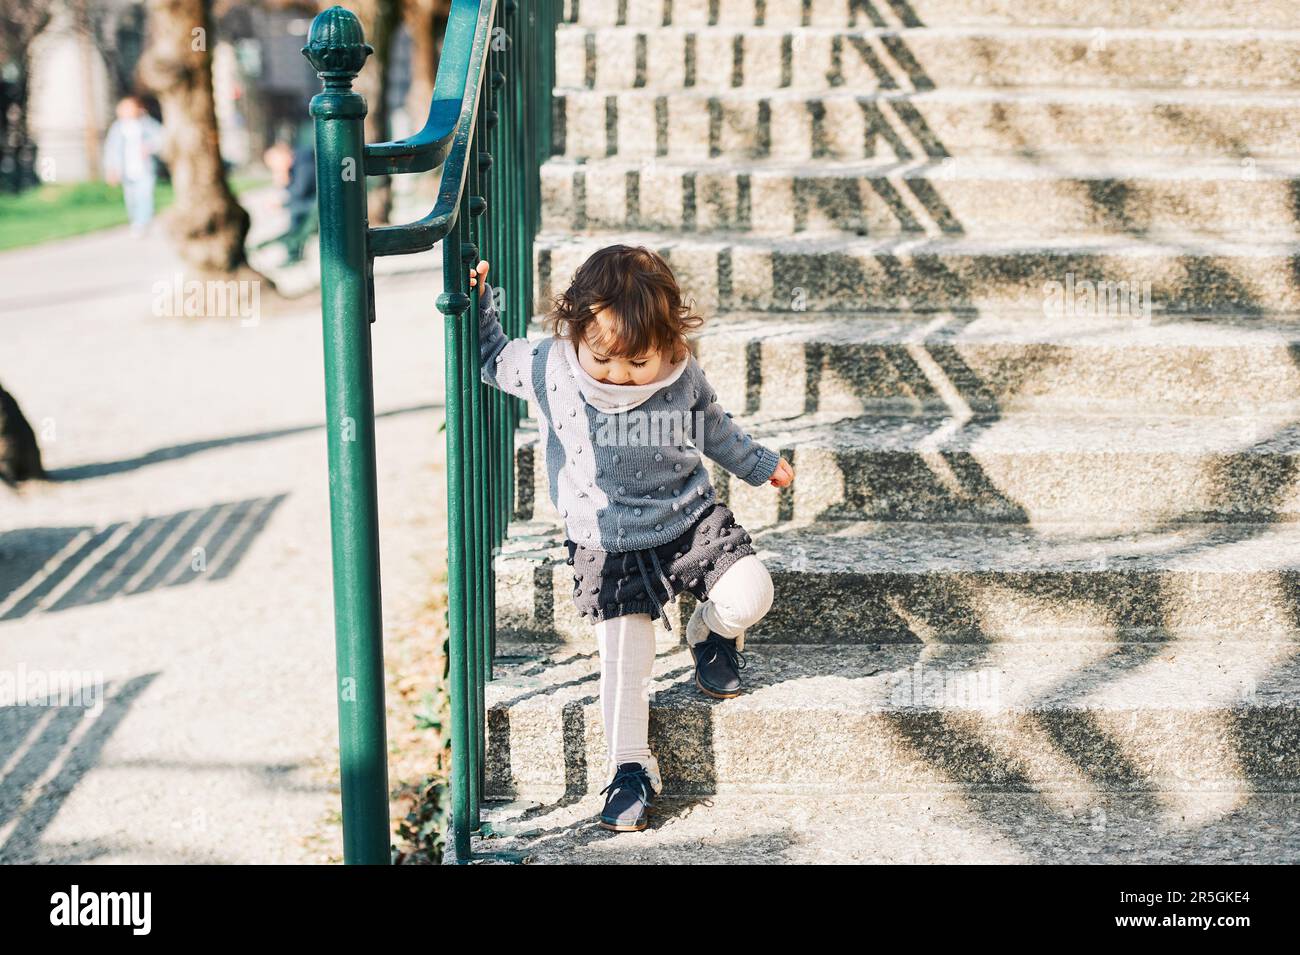 Außenporträt eines niedlichen Kleinkindes, das die Treppe hinaufgeht, ein Kind von 1 bis 2 Jahren, das Treppen auf der Straße der Stadt hochklettert und einen gestrickten Pullov trägt Stockfoto